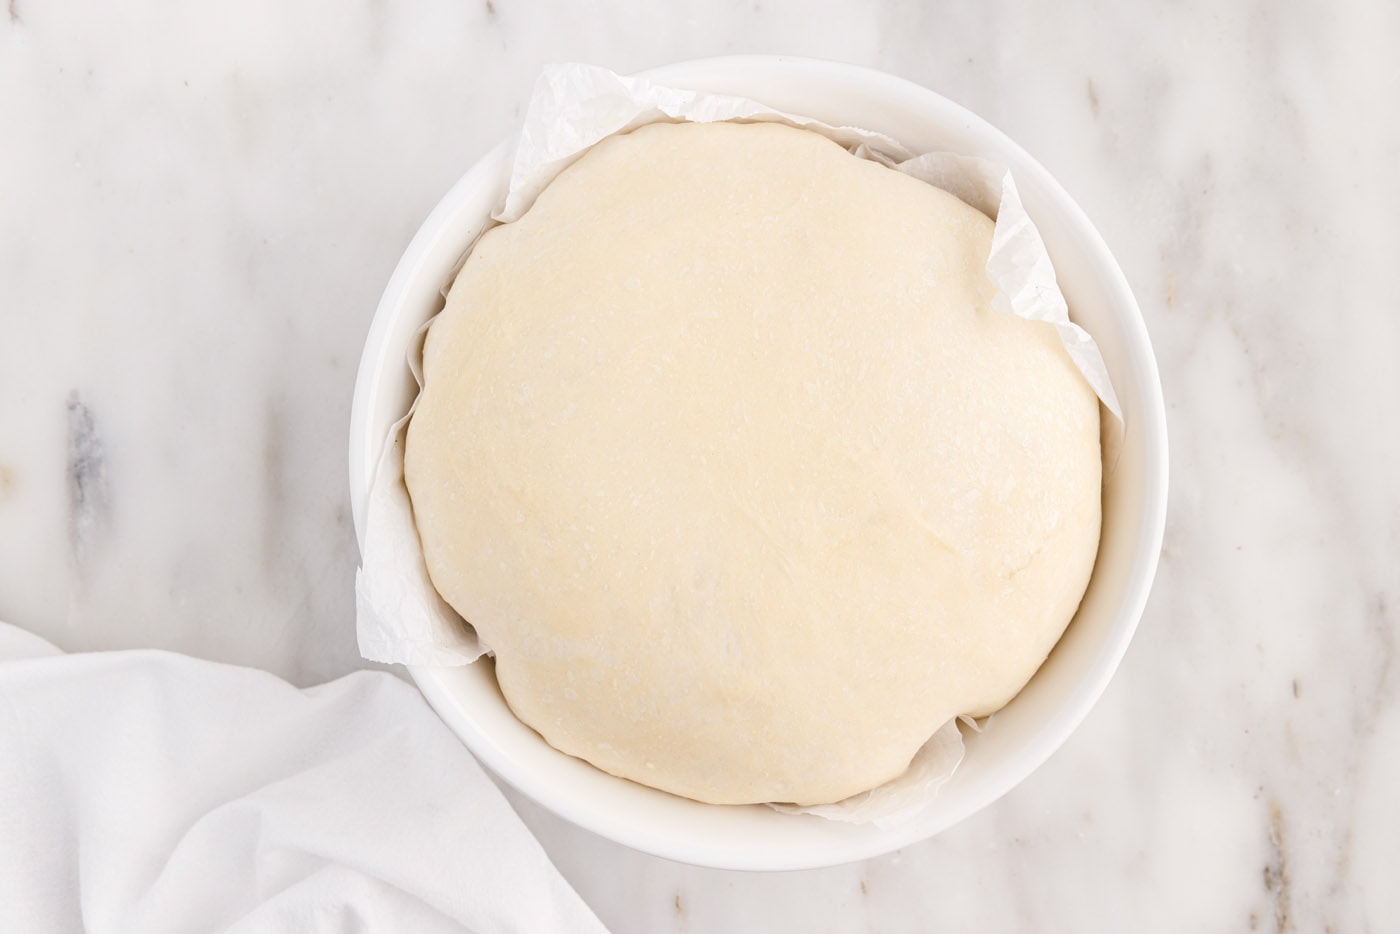 bread dough in a bowl